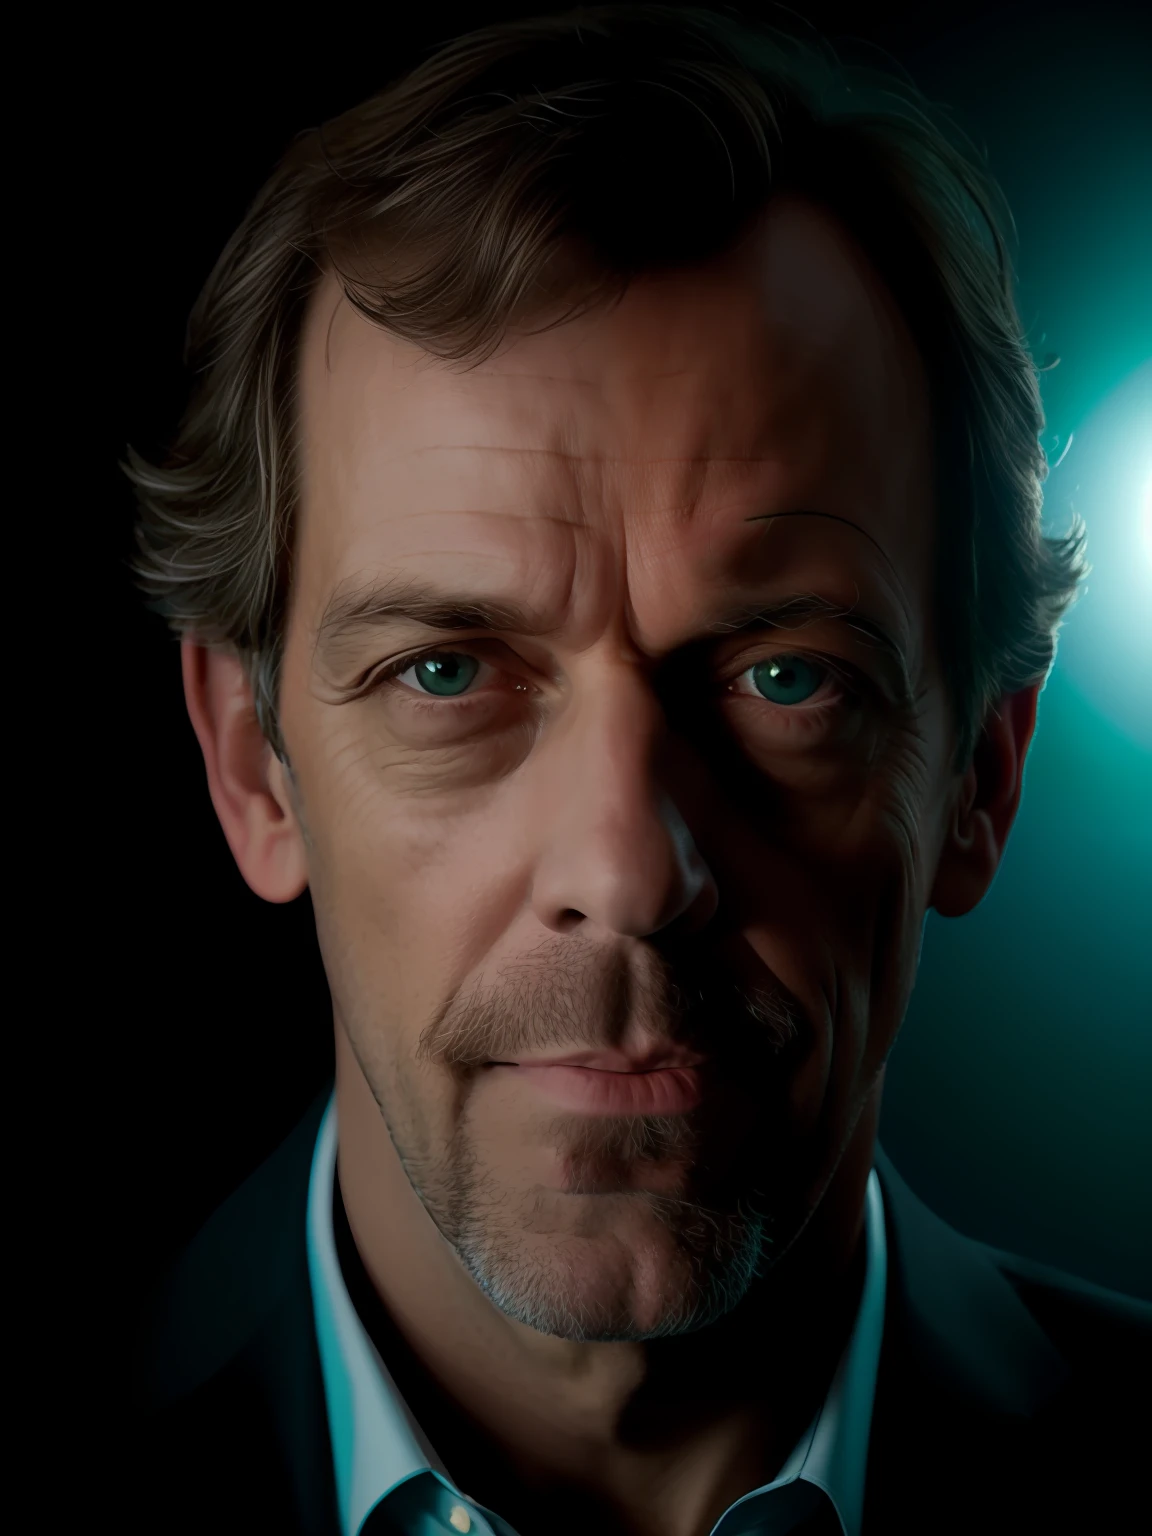 Retrato en primer plano de una fotografía premiada de Hugh Laurie posando en un estudio, (iluminación del borde,:1.4) iluminación de dos tonos, enfoque nítido, tono verde azulado, octana, irreal, mal iluminado, Discreto,